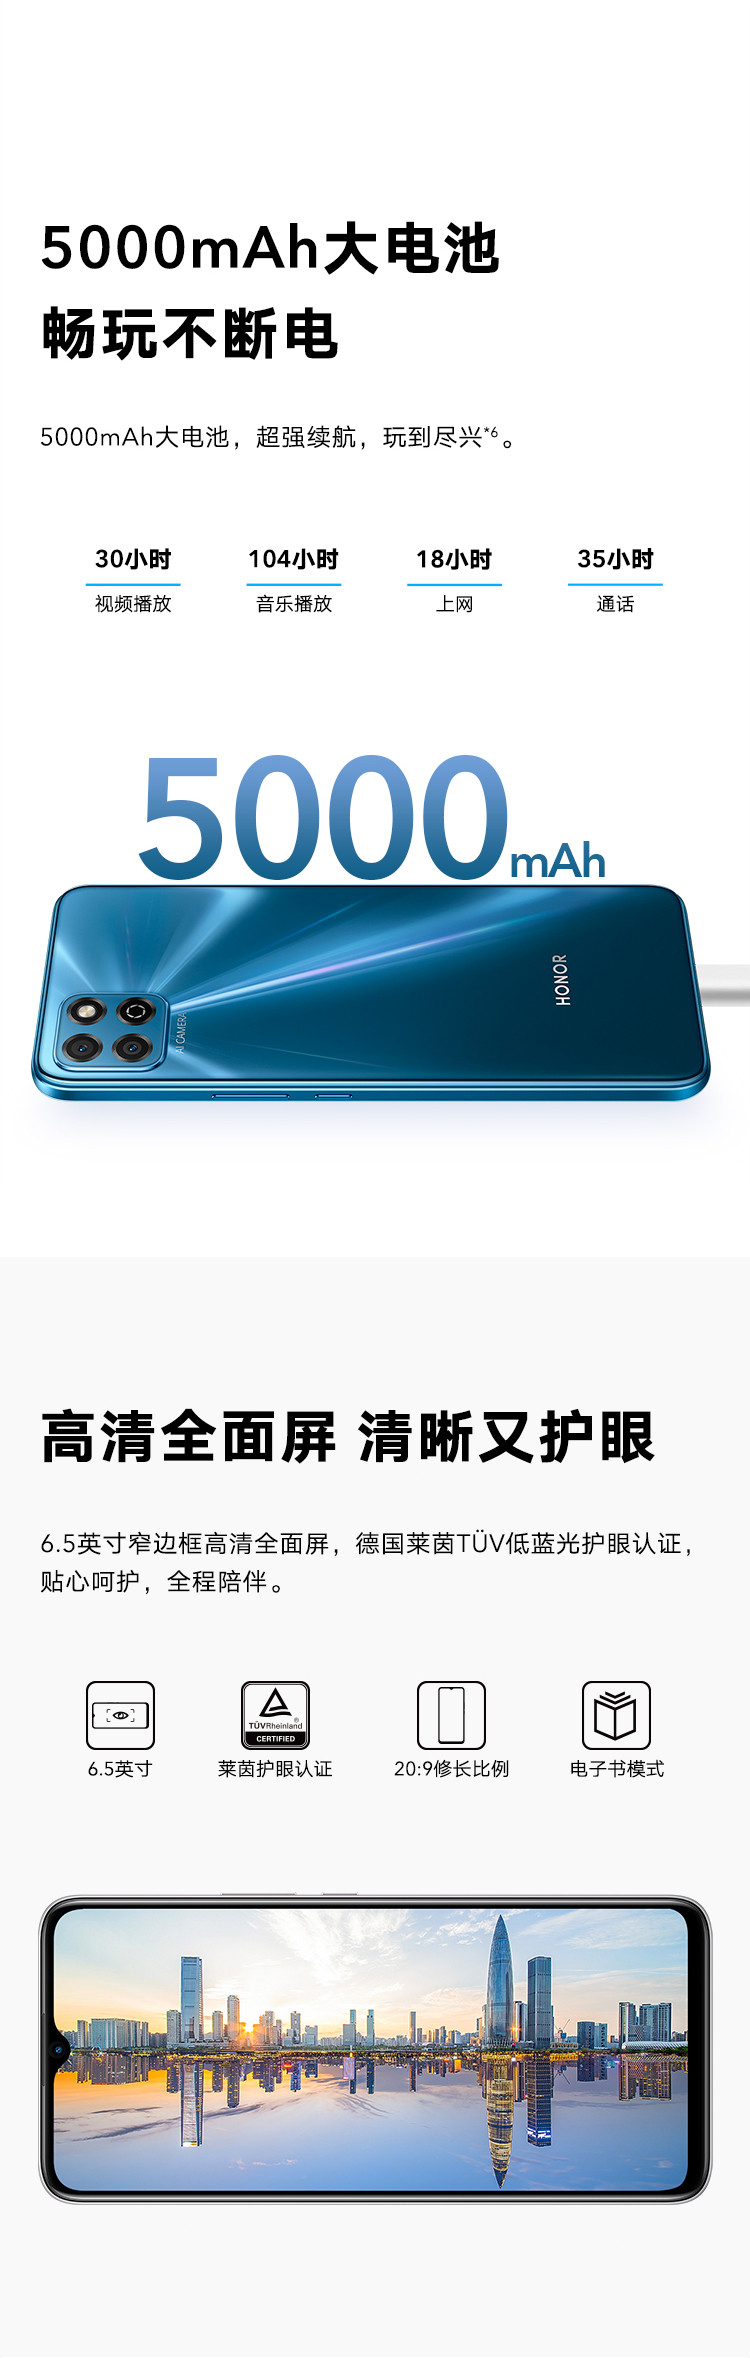 荣耀 畅玩20 全网通4G手机 5000mAh超大电池续航 6.5英寸大屏